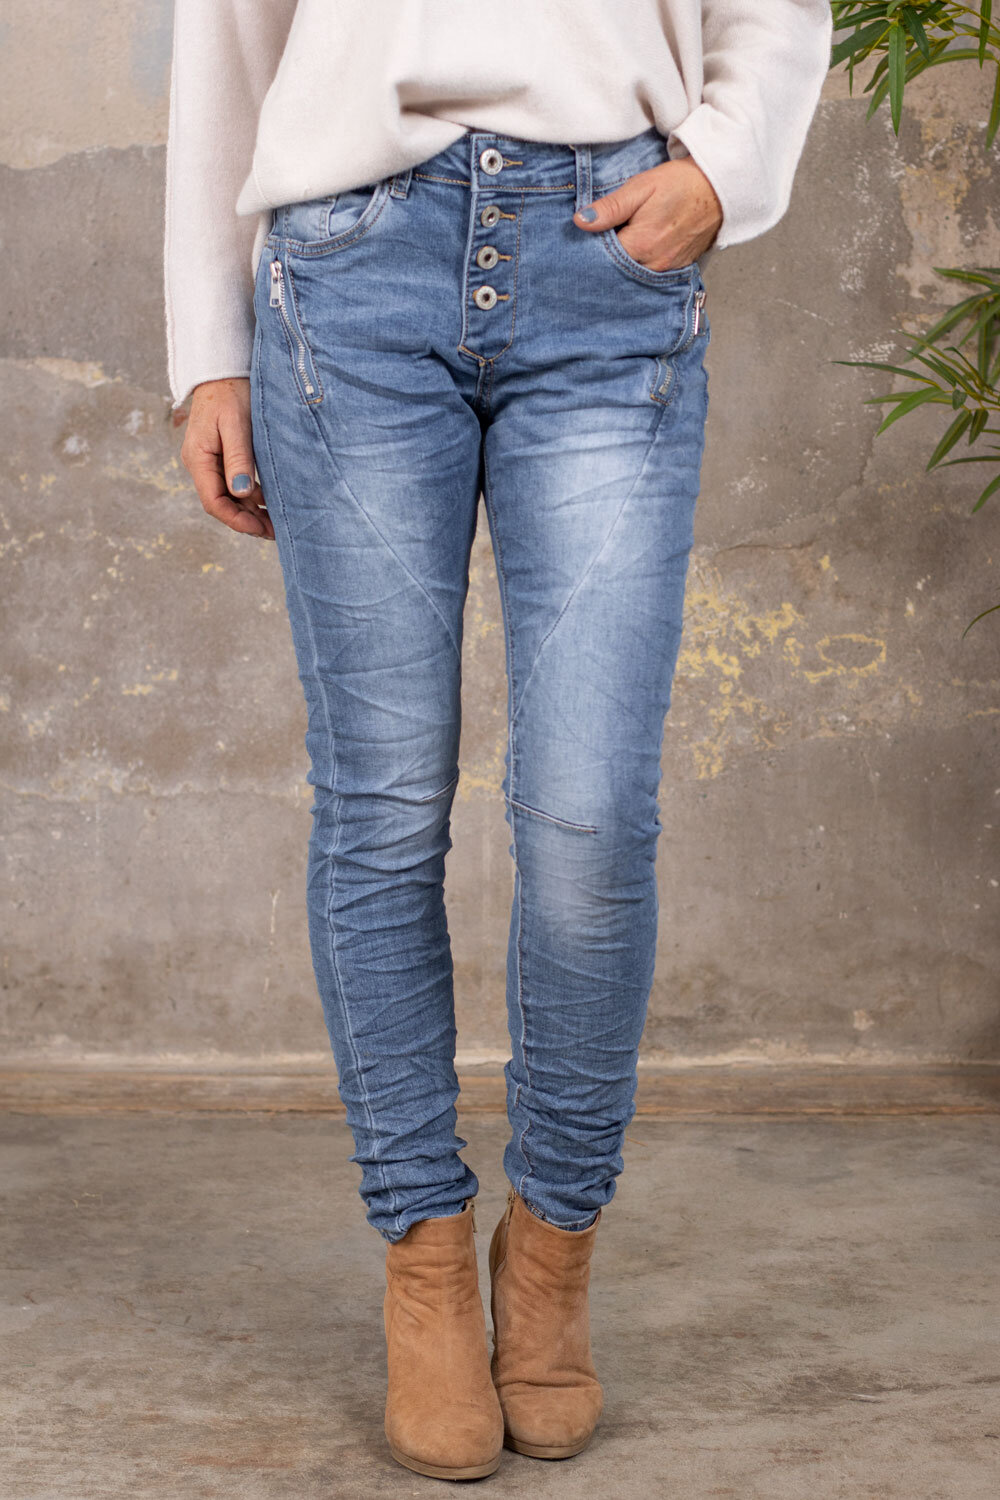 Jeans JW2229 - Dragkedjor - Ljustvätt